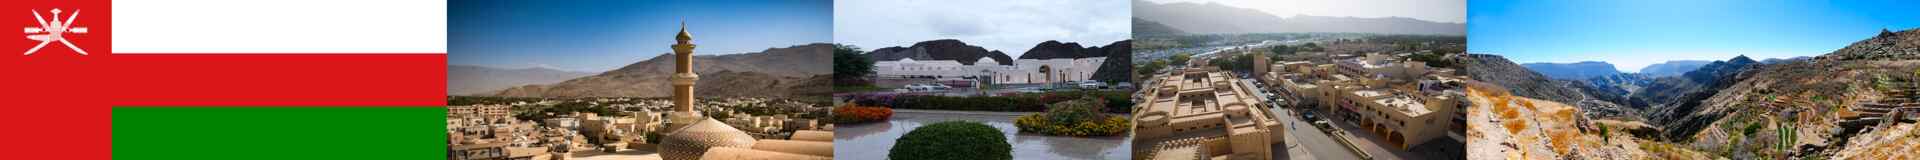 Oman Gov Tenders